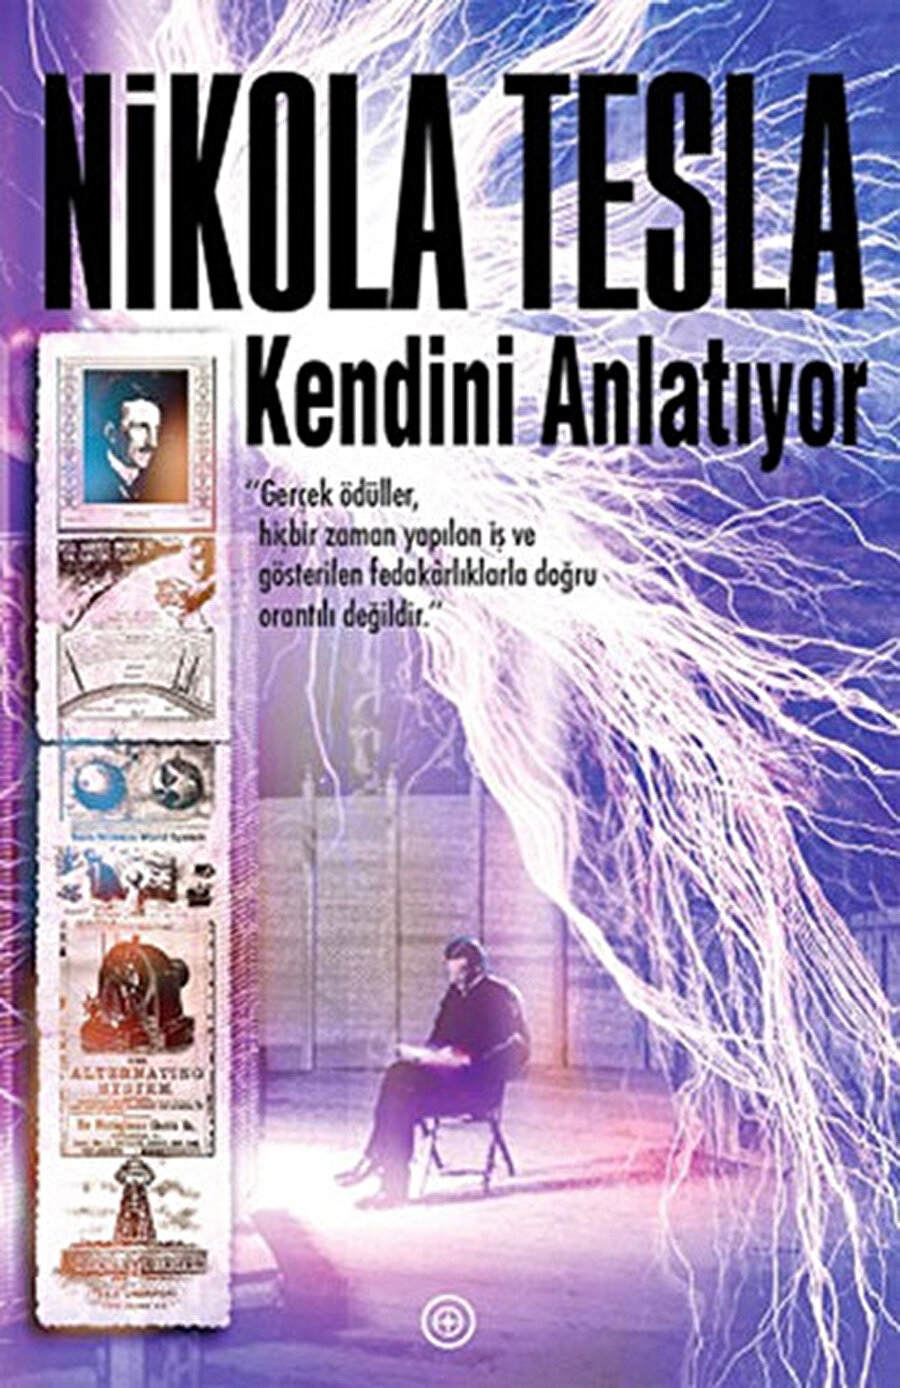 Larry Page
Son olarak Google'ın CEO'su Larry Page için ise Nikola Tesla'nın "Nikola Tesla Kendini Anlatıyor" kitabı ilham kaynağı. http://www.dr.com.tr/Kitap/Nik...